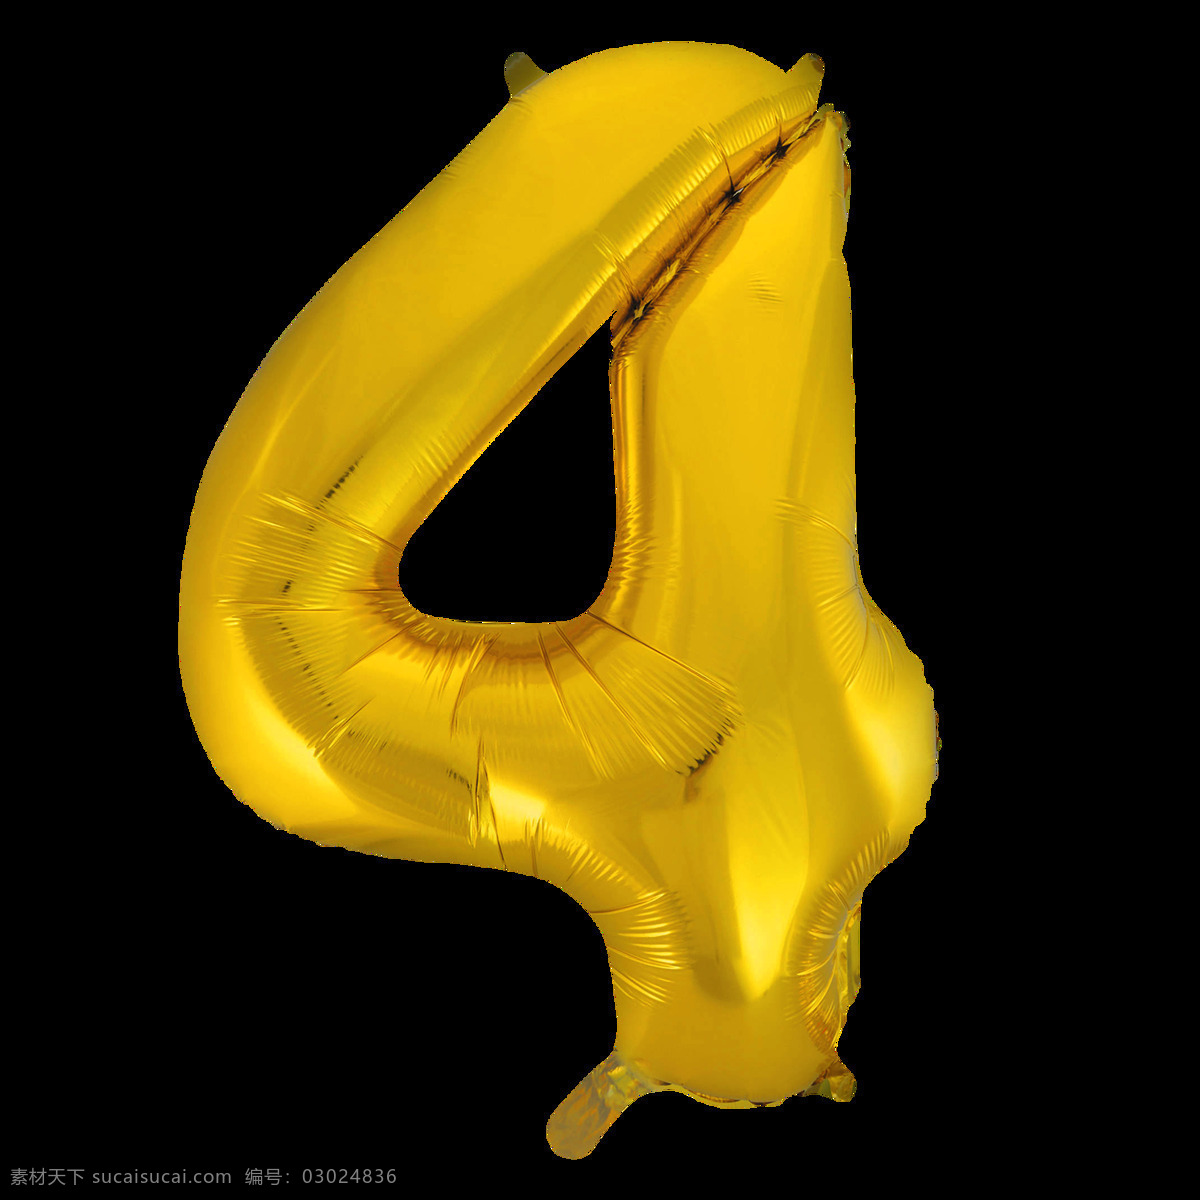 金色气球字4 金色气球字 气球字 气球数字 铝膜气球字母 装饰字 派对气球 气球文字 字母气球 铝箔气球 3d设计 3d作品